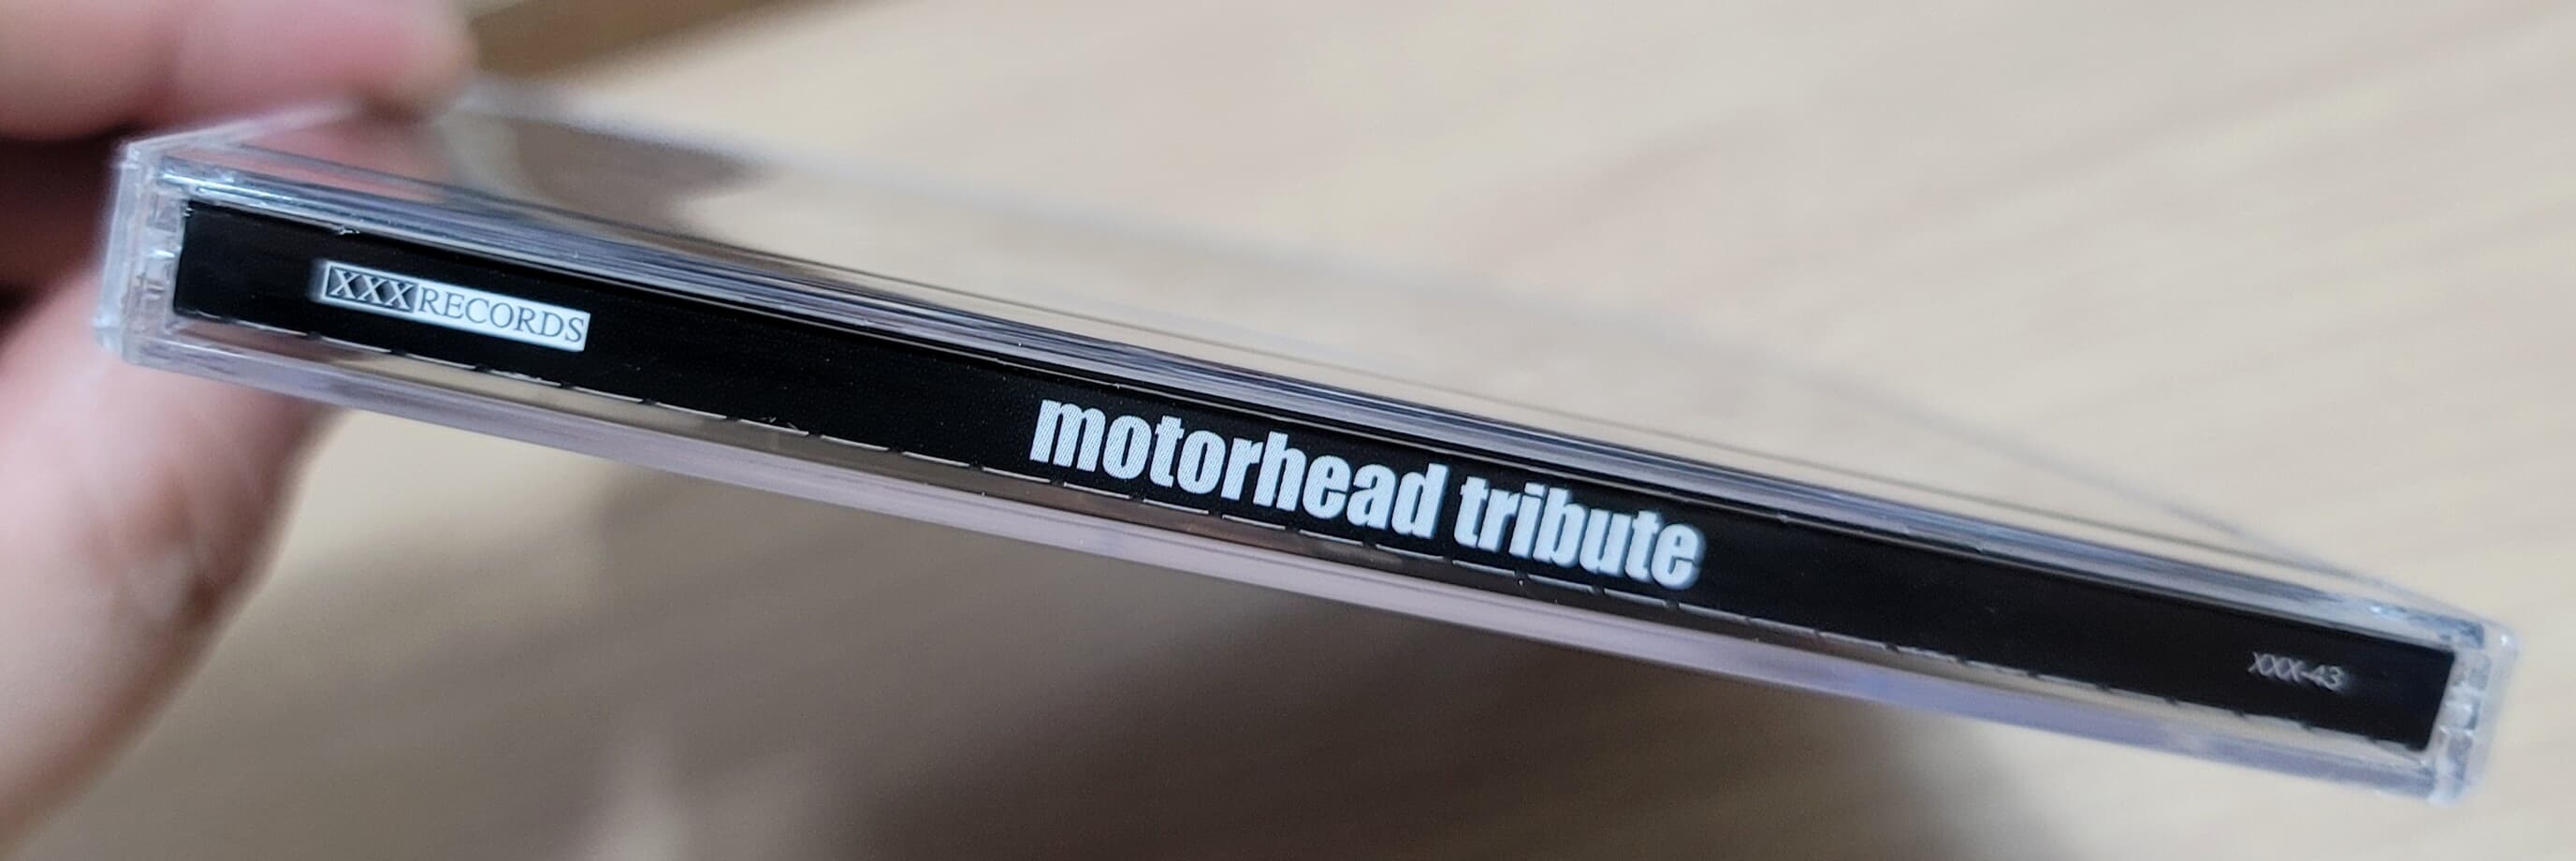 (일본반) V.A. - Motorhead Tribute